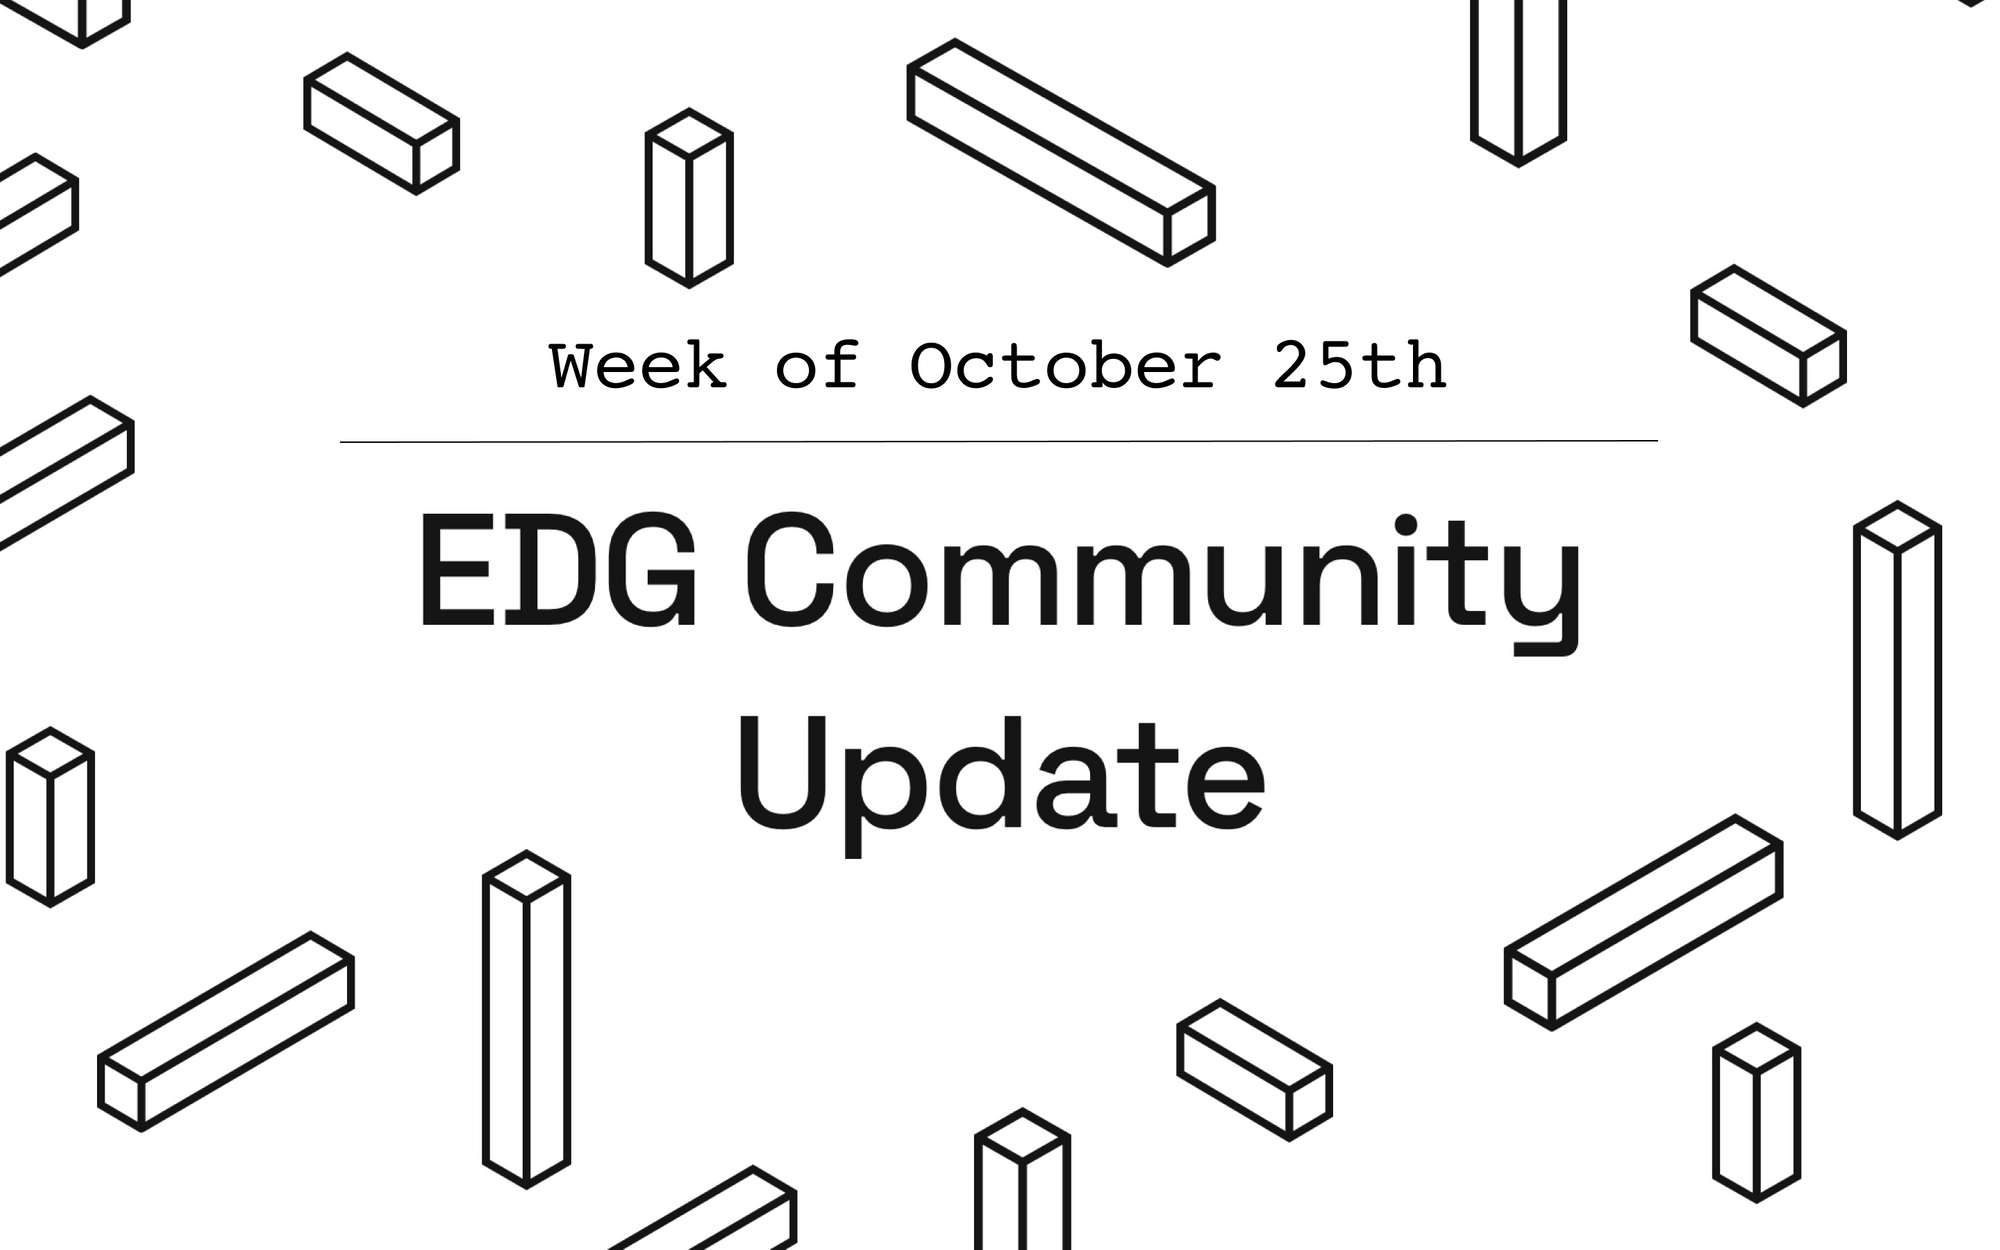 EDG Community Update: Week of October 25th